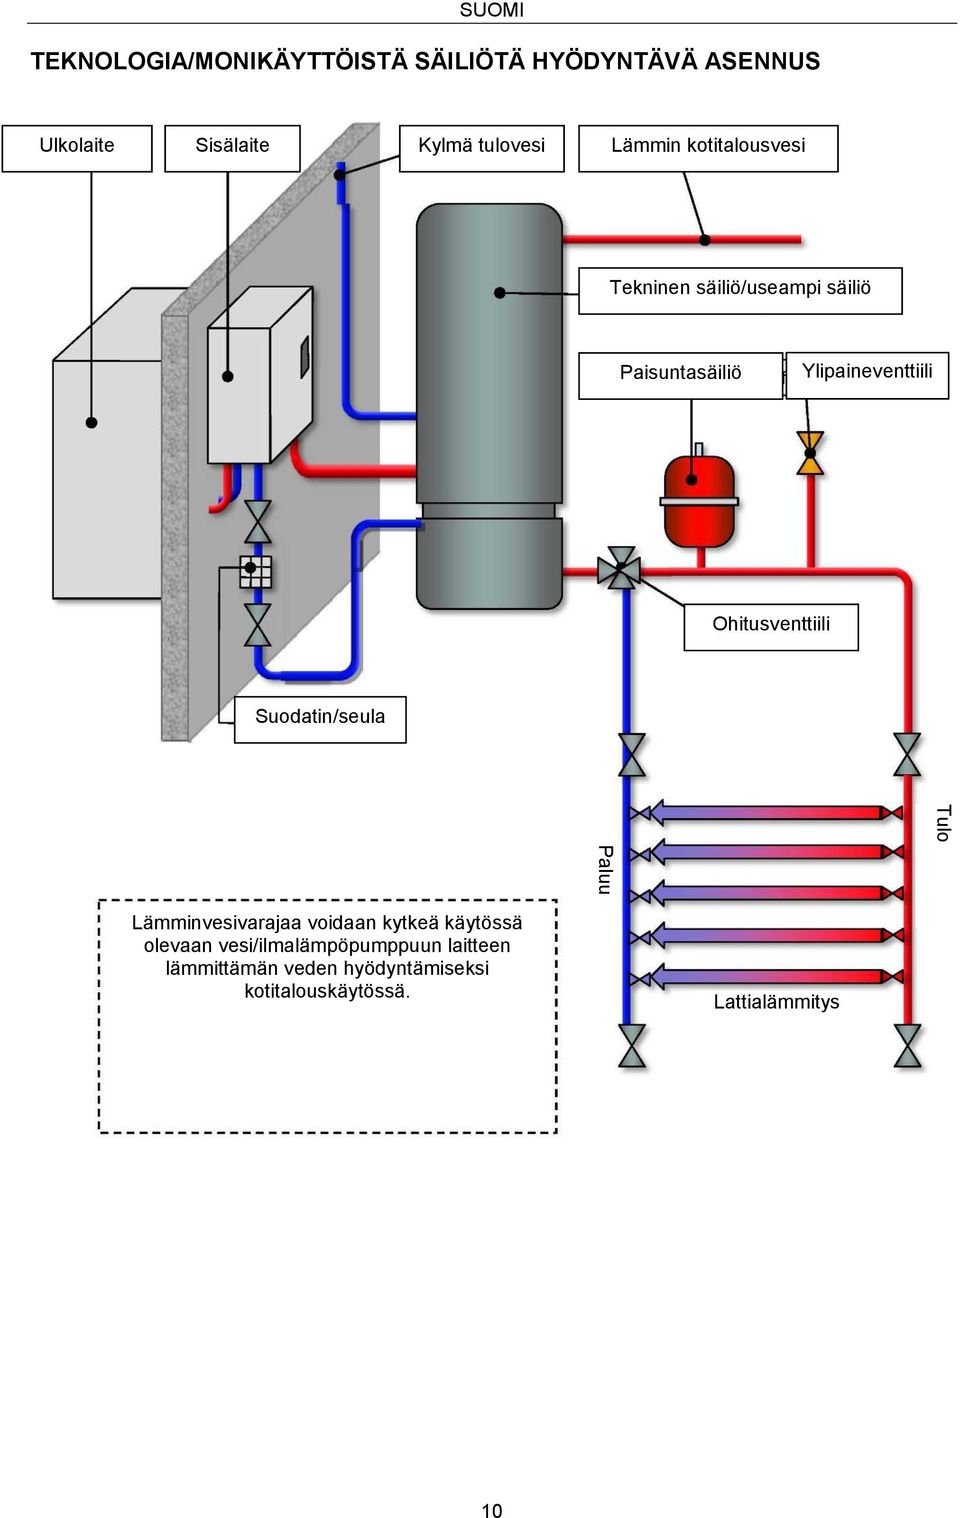 Ylipaineventtiili Ohitusventtiili Suodatin/seula Lämminvesivarajaa voidaan kytkeä käytössä